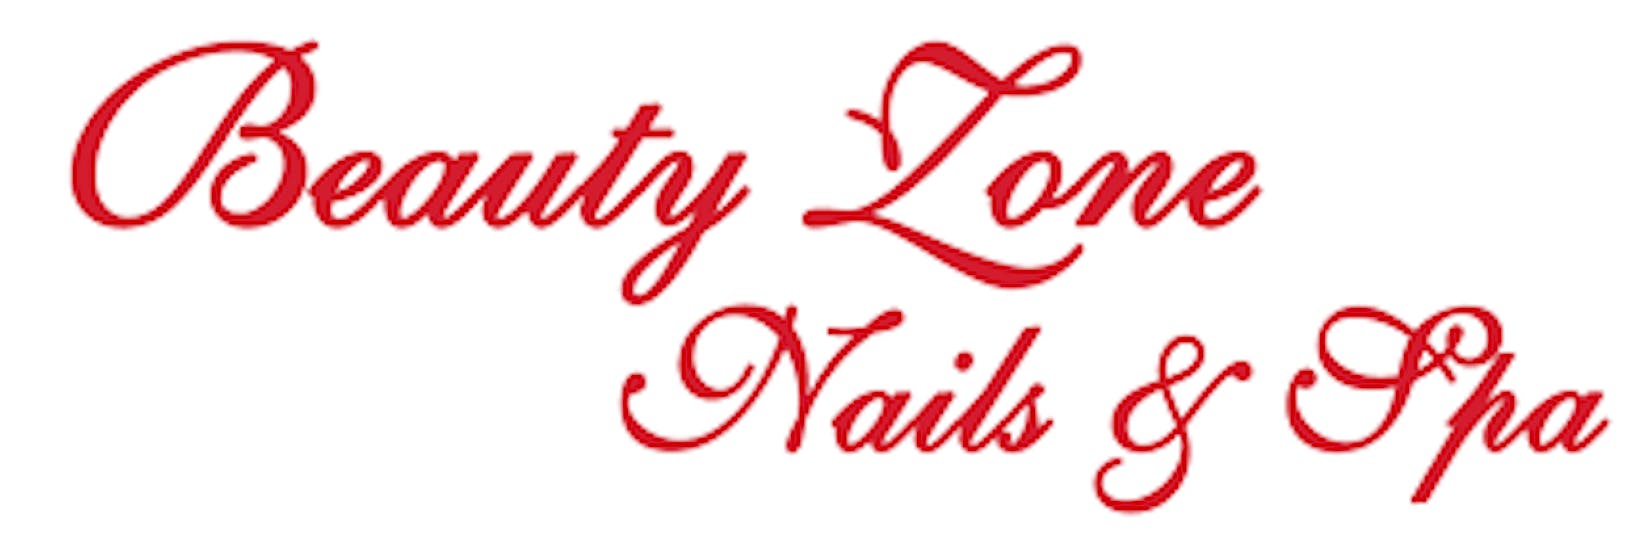 Beauty Zone Nail & Spa | Beauty